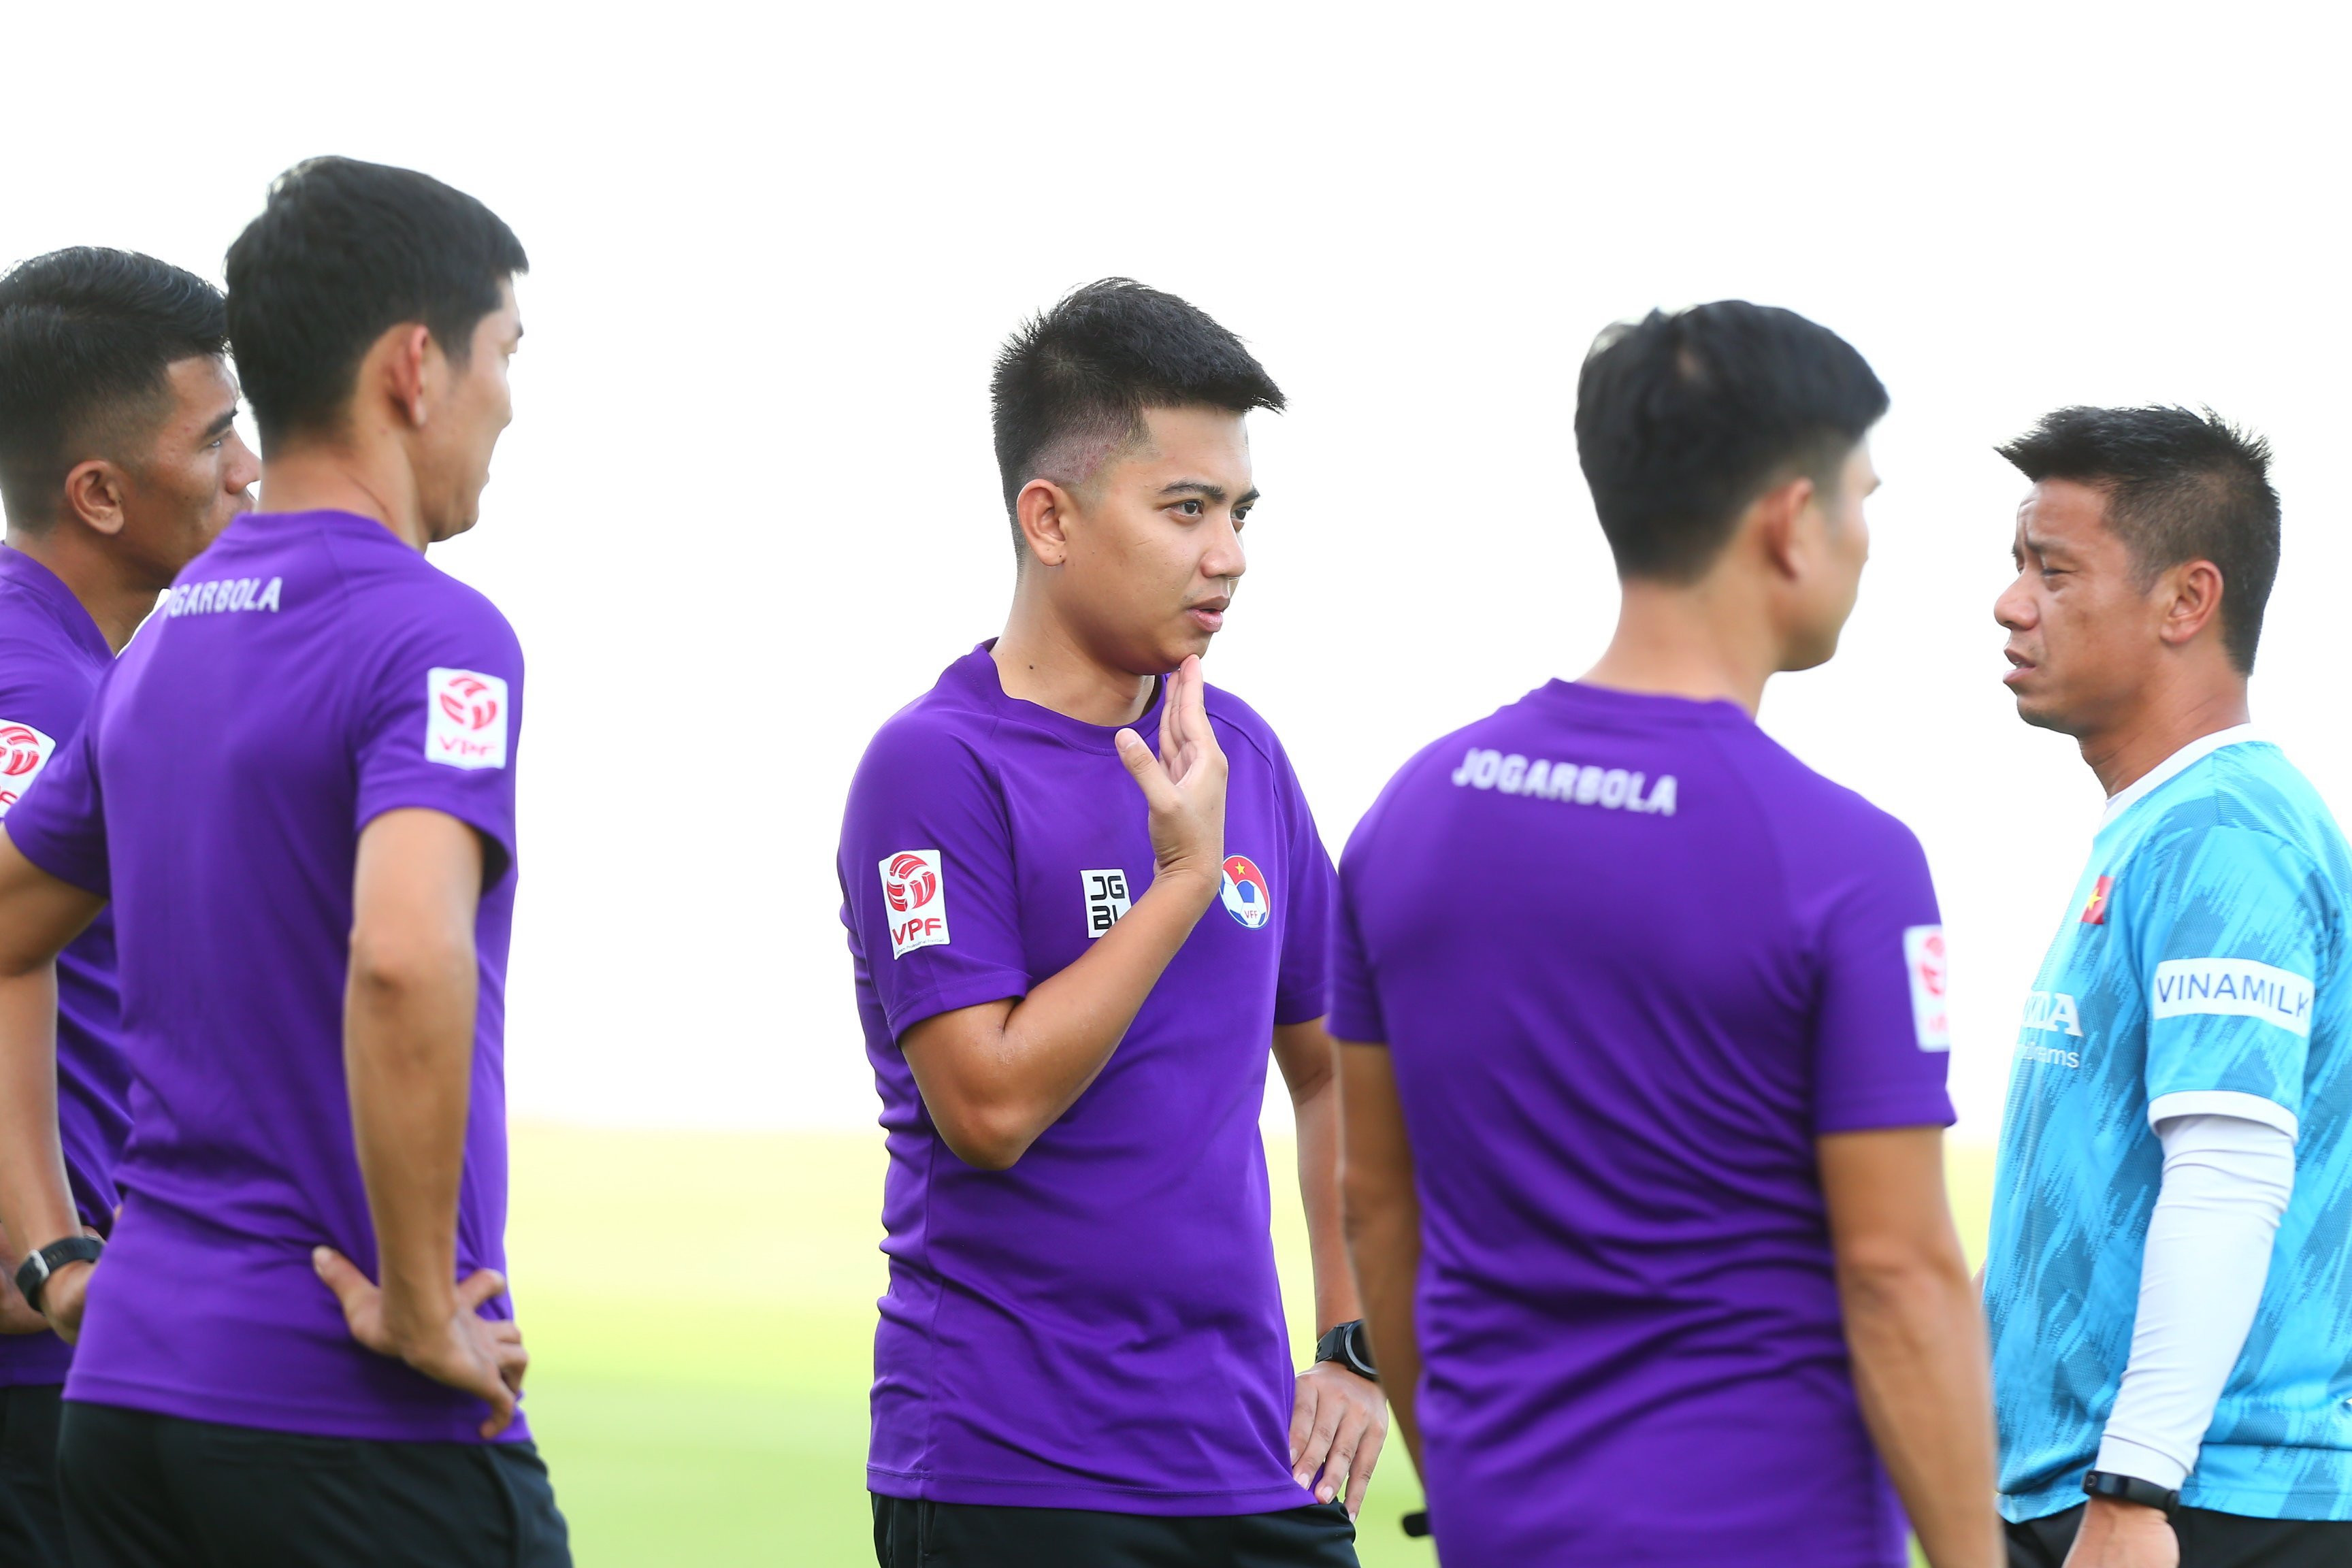 Đáng chú ý điều hành trận đấu nội bộ của tuyển Việt Nam có trọng tài Trần Ngọc Nhớ, người từng mắc sai lầm lớn tại V-League 2022 vừa qua.